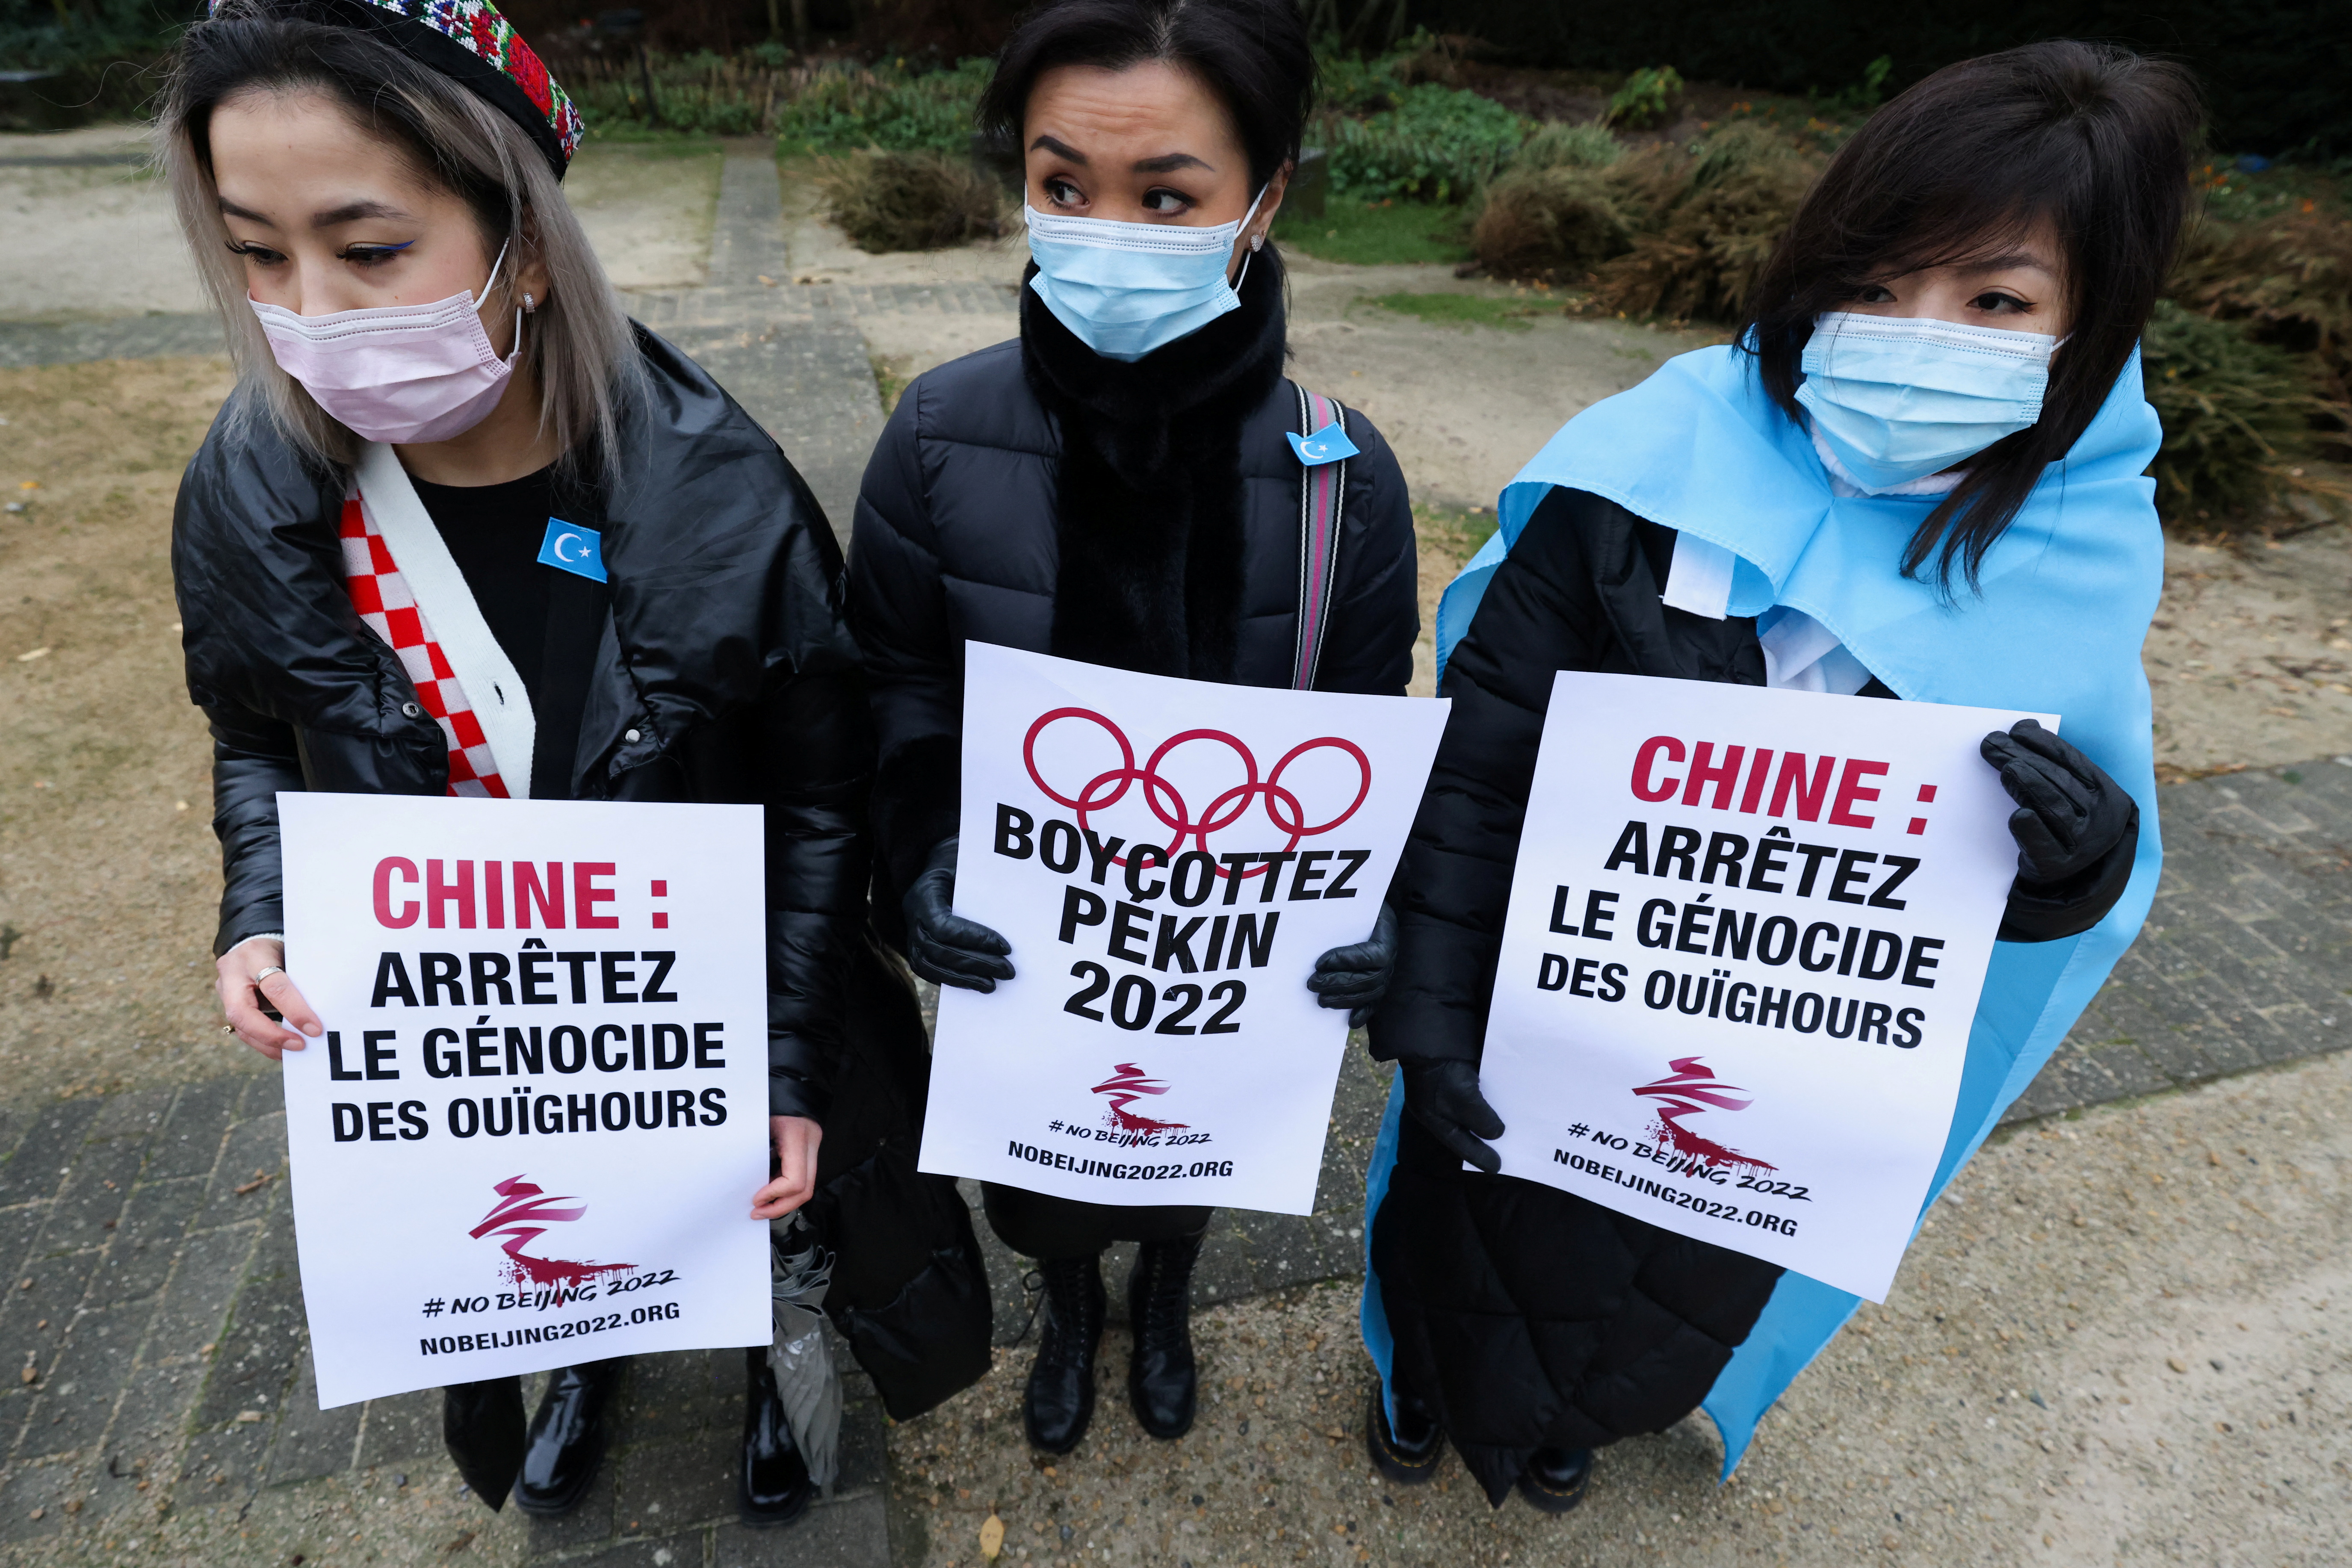 Varias personas, entre ellas miembros de la Asociación Uigur de Bélgica y tibetanos, participan en una protesta que pide el boicot de los Juegos Olímpicos de Invierno de 2022 en Pekín, frente a la sede de la Unión Europea en Bruselas, Bélgica, el 4 de enero de 2022. En las pancartas se lee: "Boicot a Pekín 2022" y "China: Detengan el genocidio de los uigures". REUTERS/Yves Herman